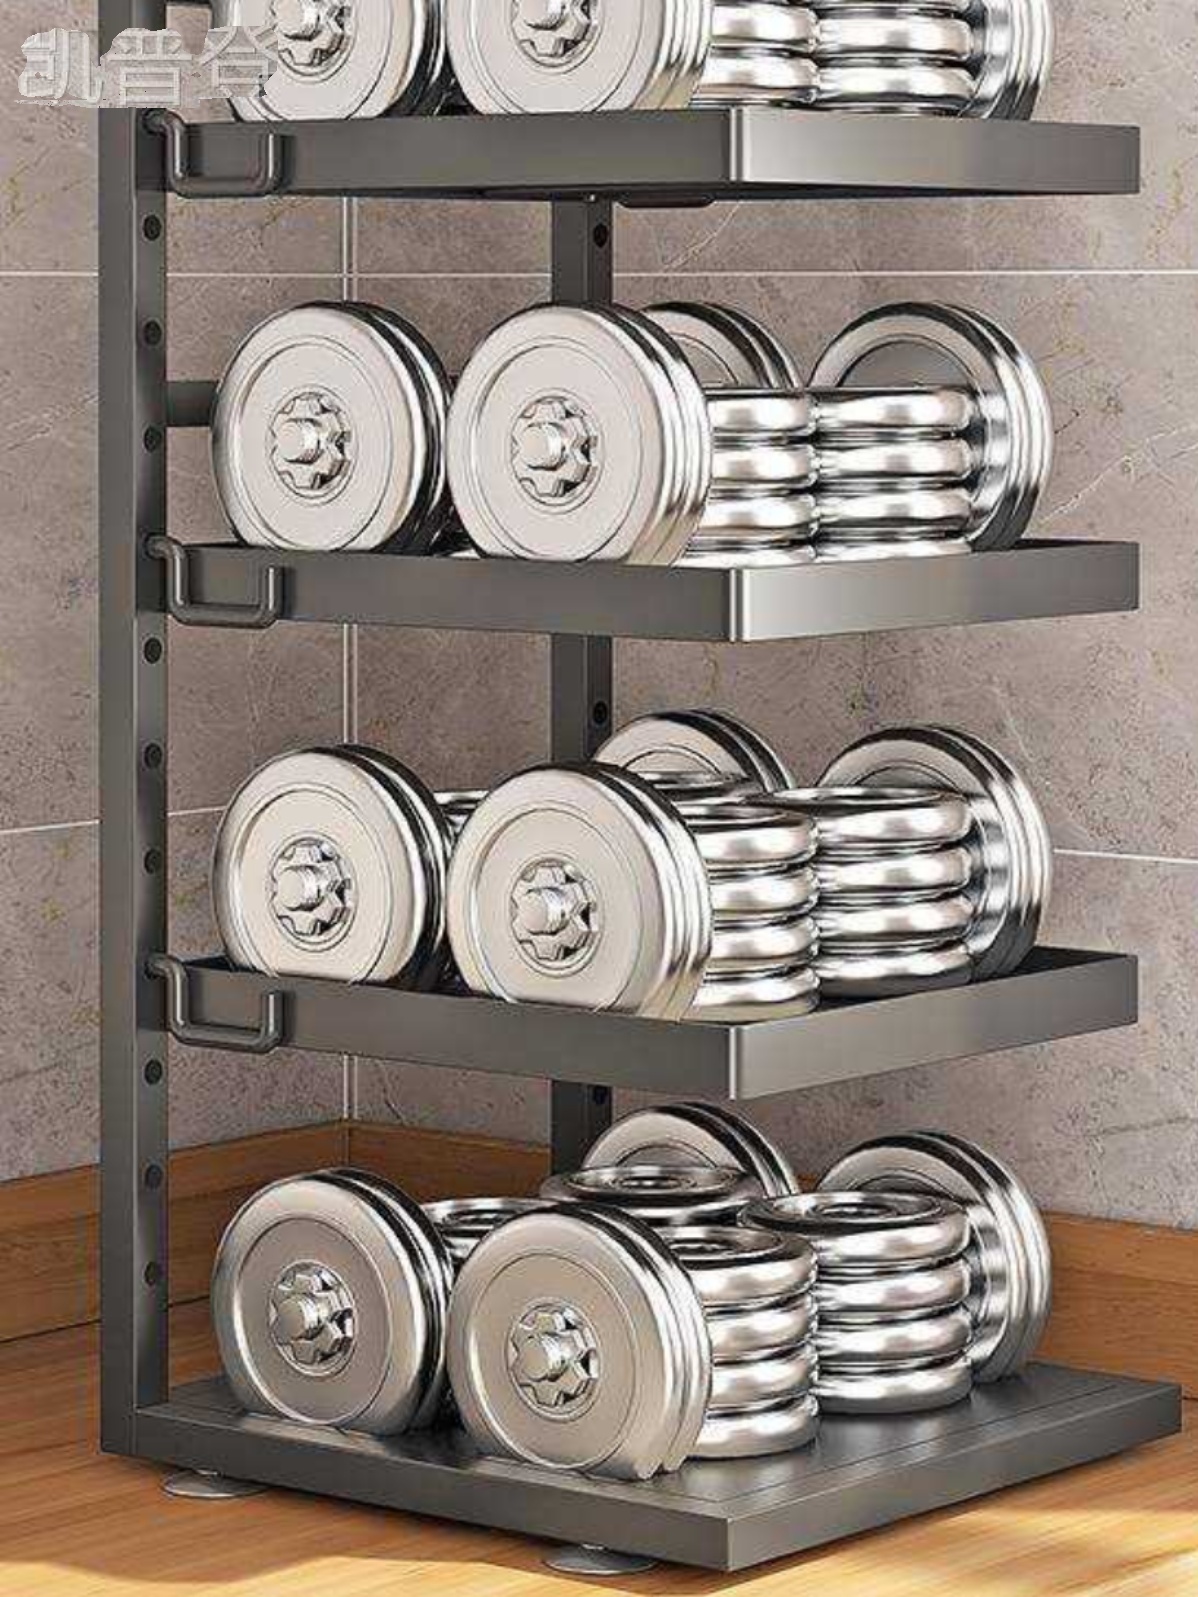 厨房多层锅架可调节台面墙角放锅具下水槽橱柜壁挂两用收纳置物架